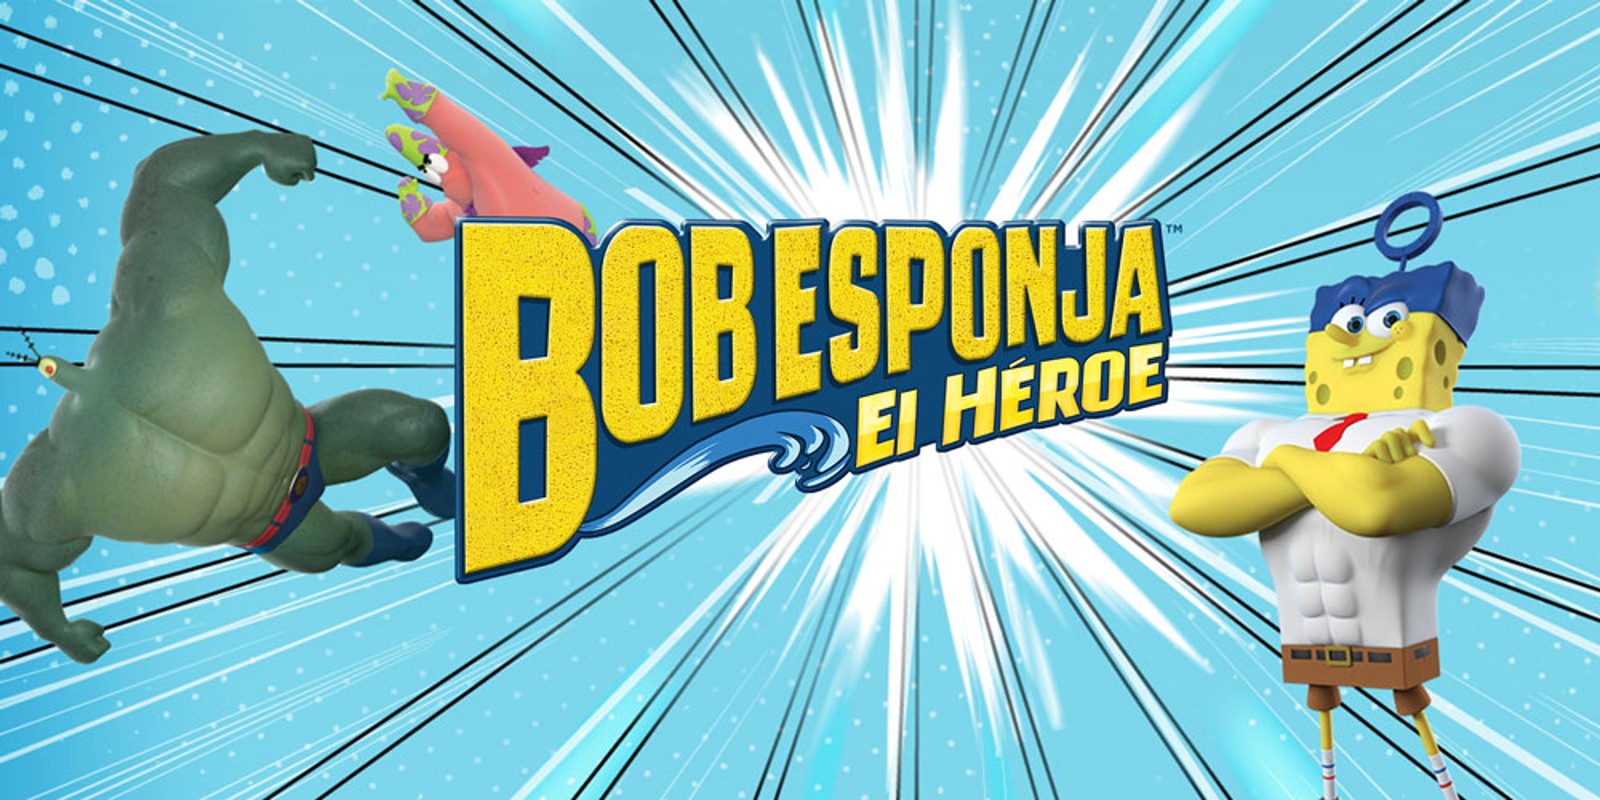 Bob Esponja: El héroe